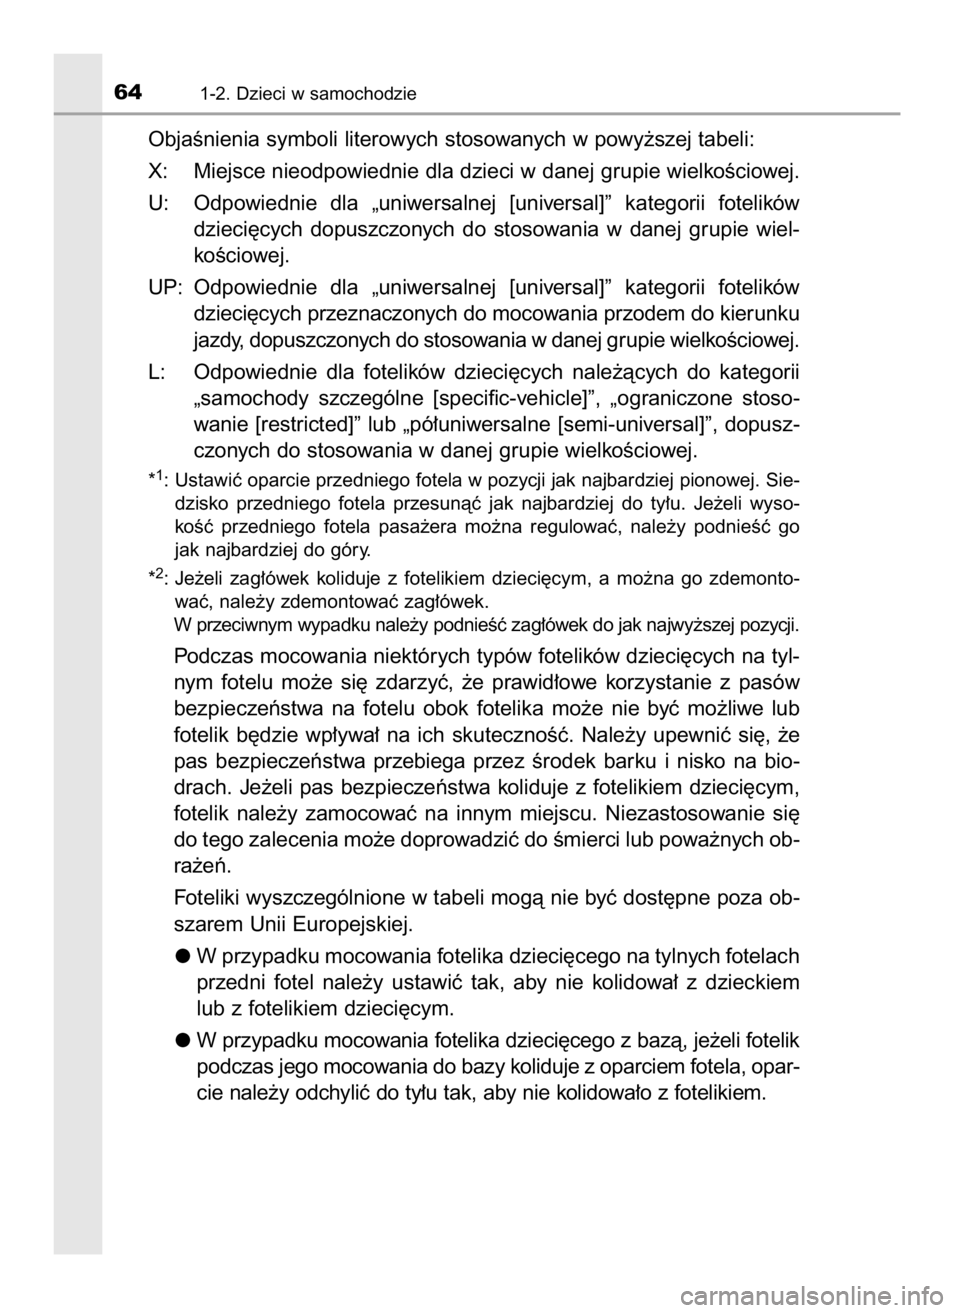 TOYOTA YARIS GRMN 2017  Instrukcja obsługi (in Polish) ObjaÊnienia symboli literowych stosowanych w powy˝szej tabeli:
X: Miejsce nieodpowiednie dla dzieci w danej grupie wielkoÊciowej.
U: Odpowiednie  dla  „uniwersalnej  [universal]”  kategorii  fo